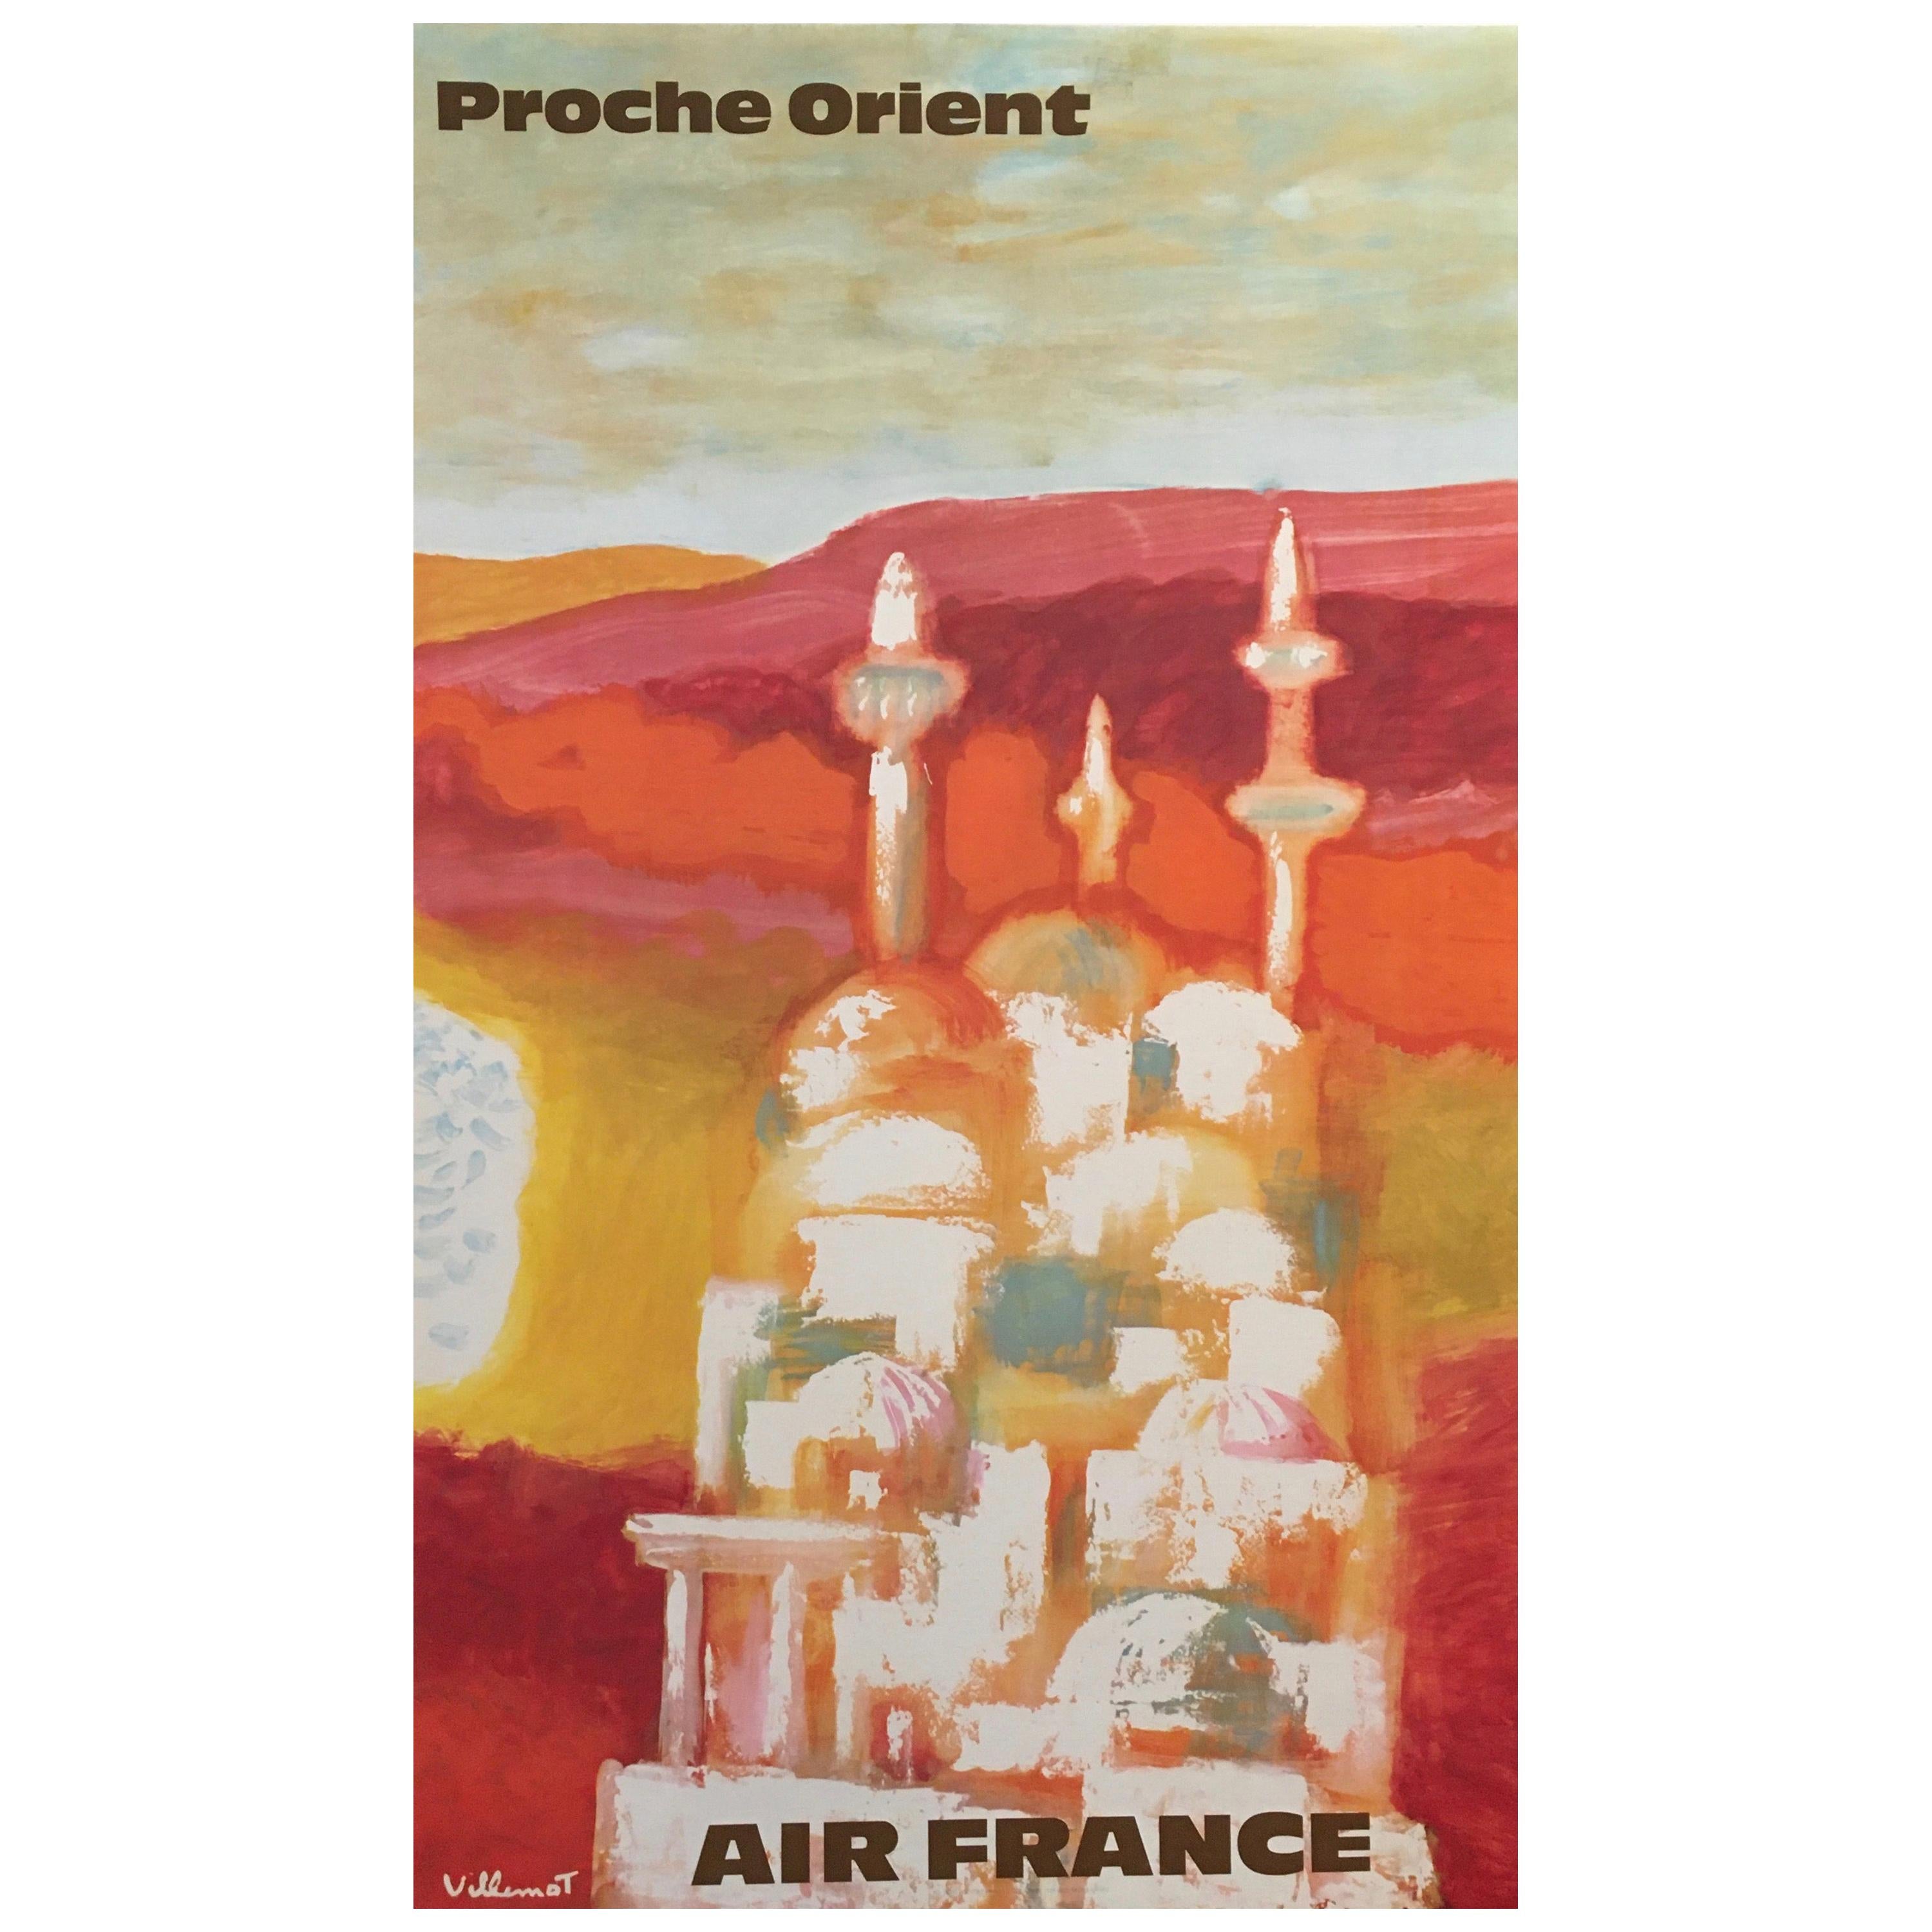 'Air France Proche Orient' by Villemot, Original Vintage Travel Poster 1967